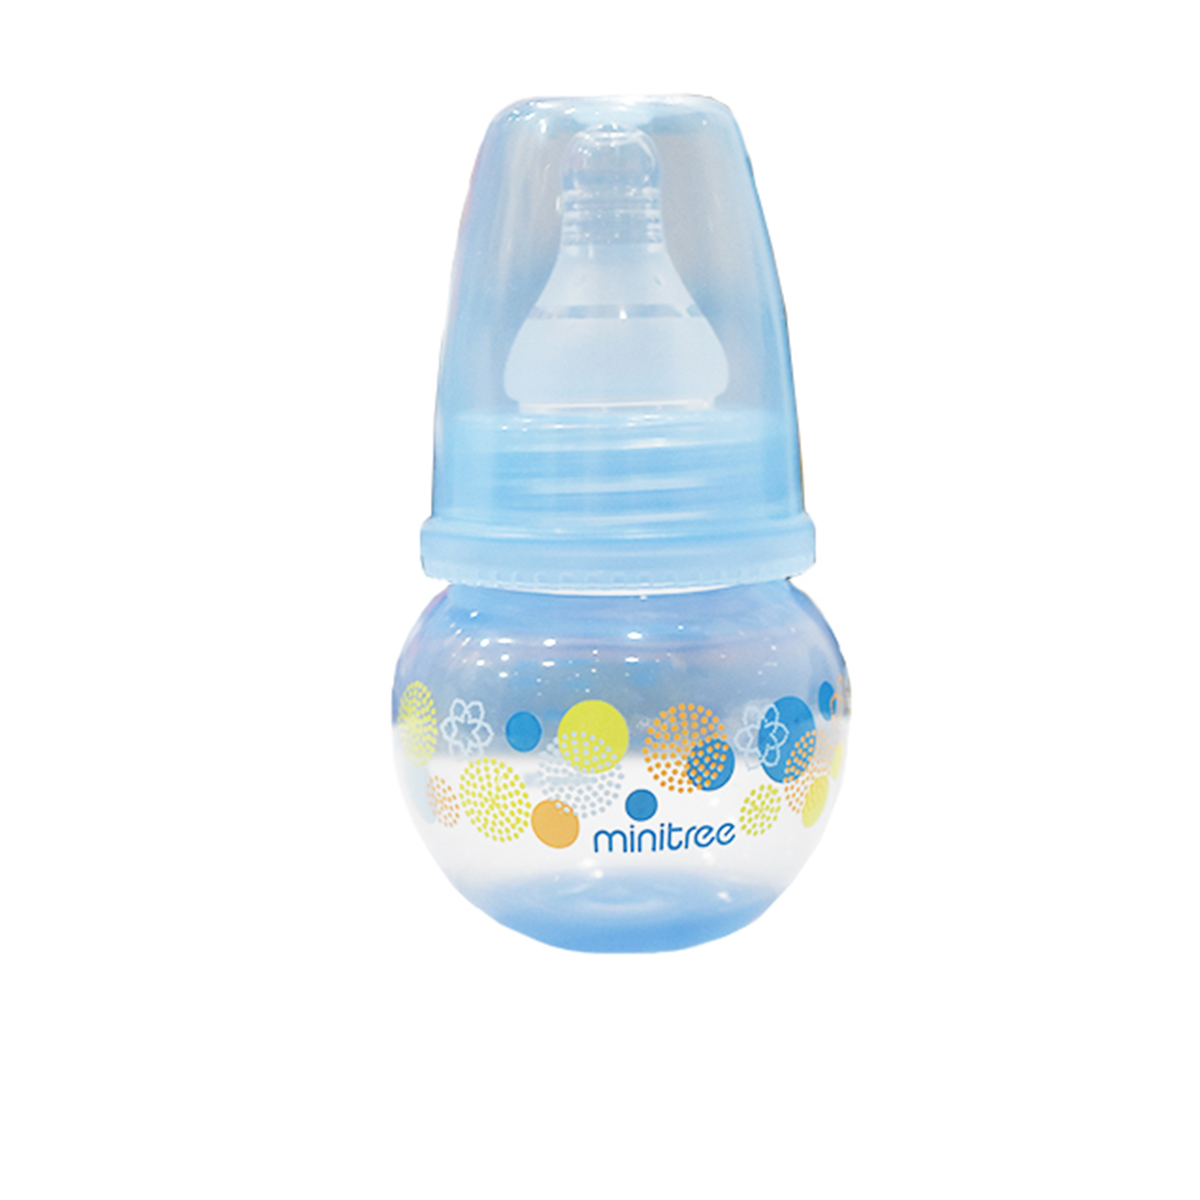 شیشه شیر کودک مینی تری مدل توپ گنجایش 60 میلی لیتر